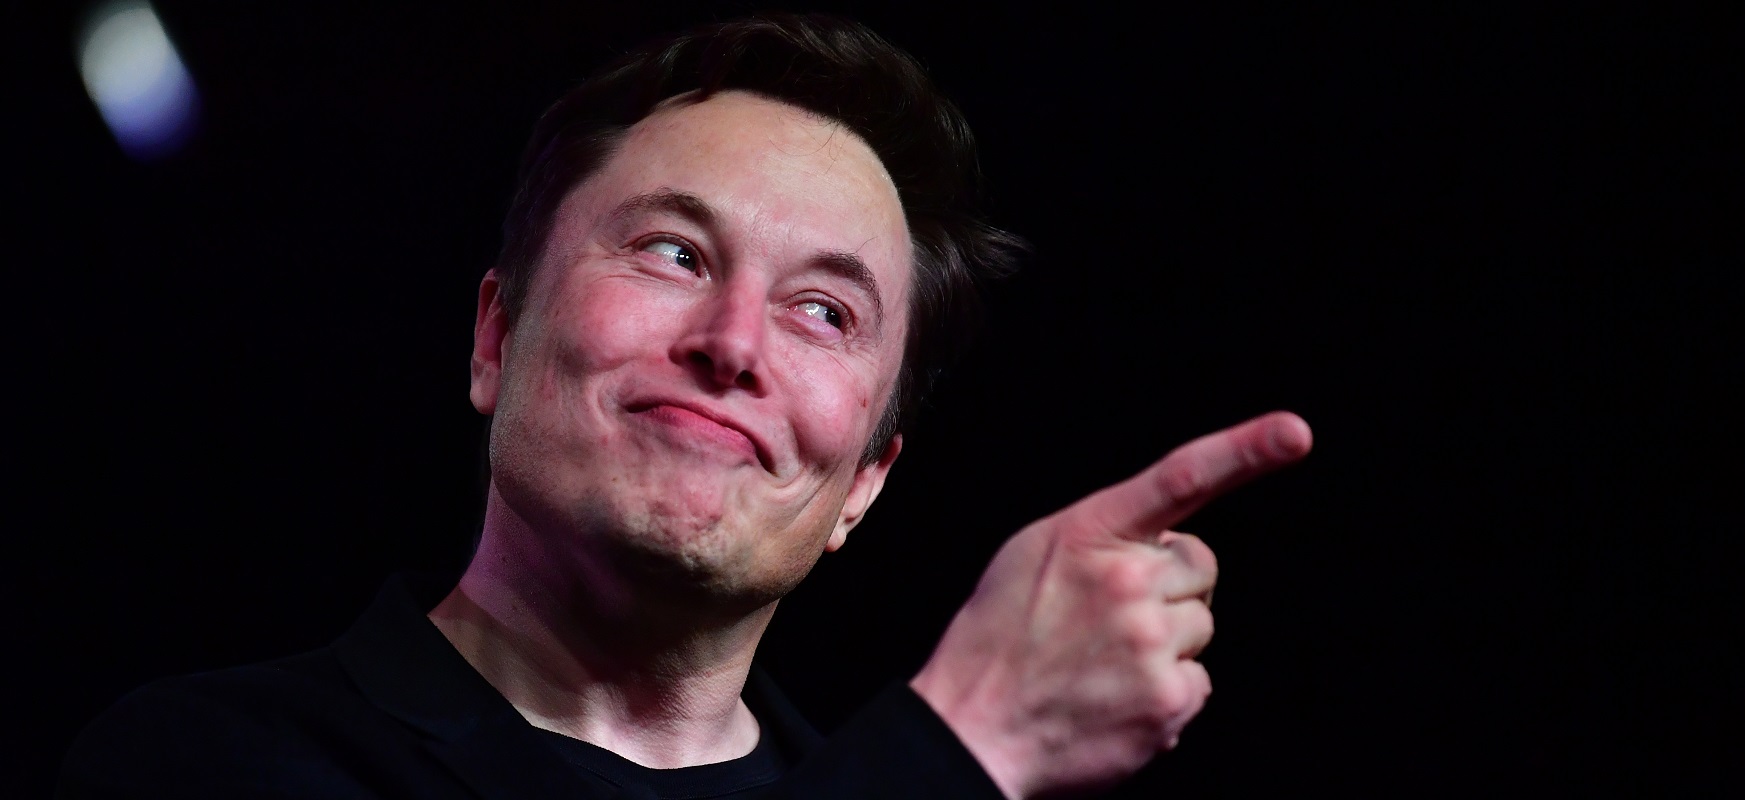 Elon Musk-ek zioen: bost urte barru ez duzu ezer esan beharko
